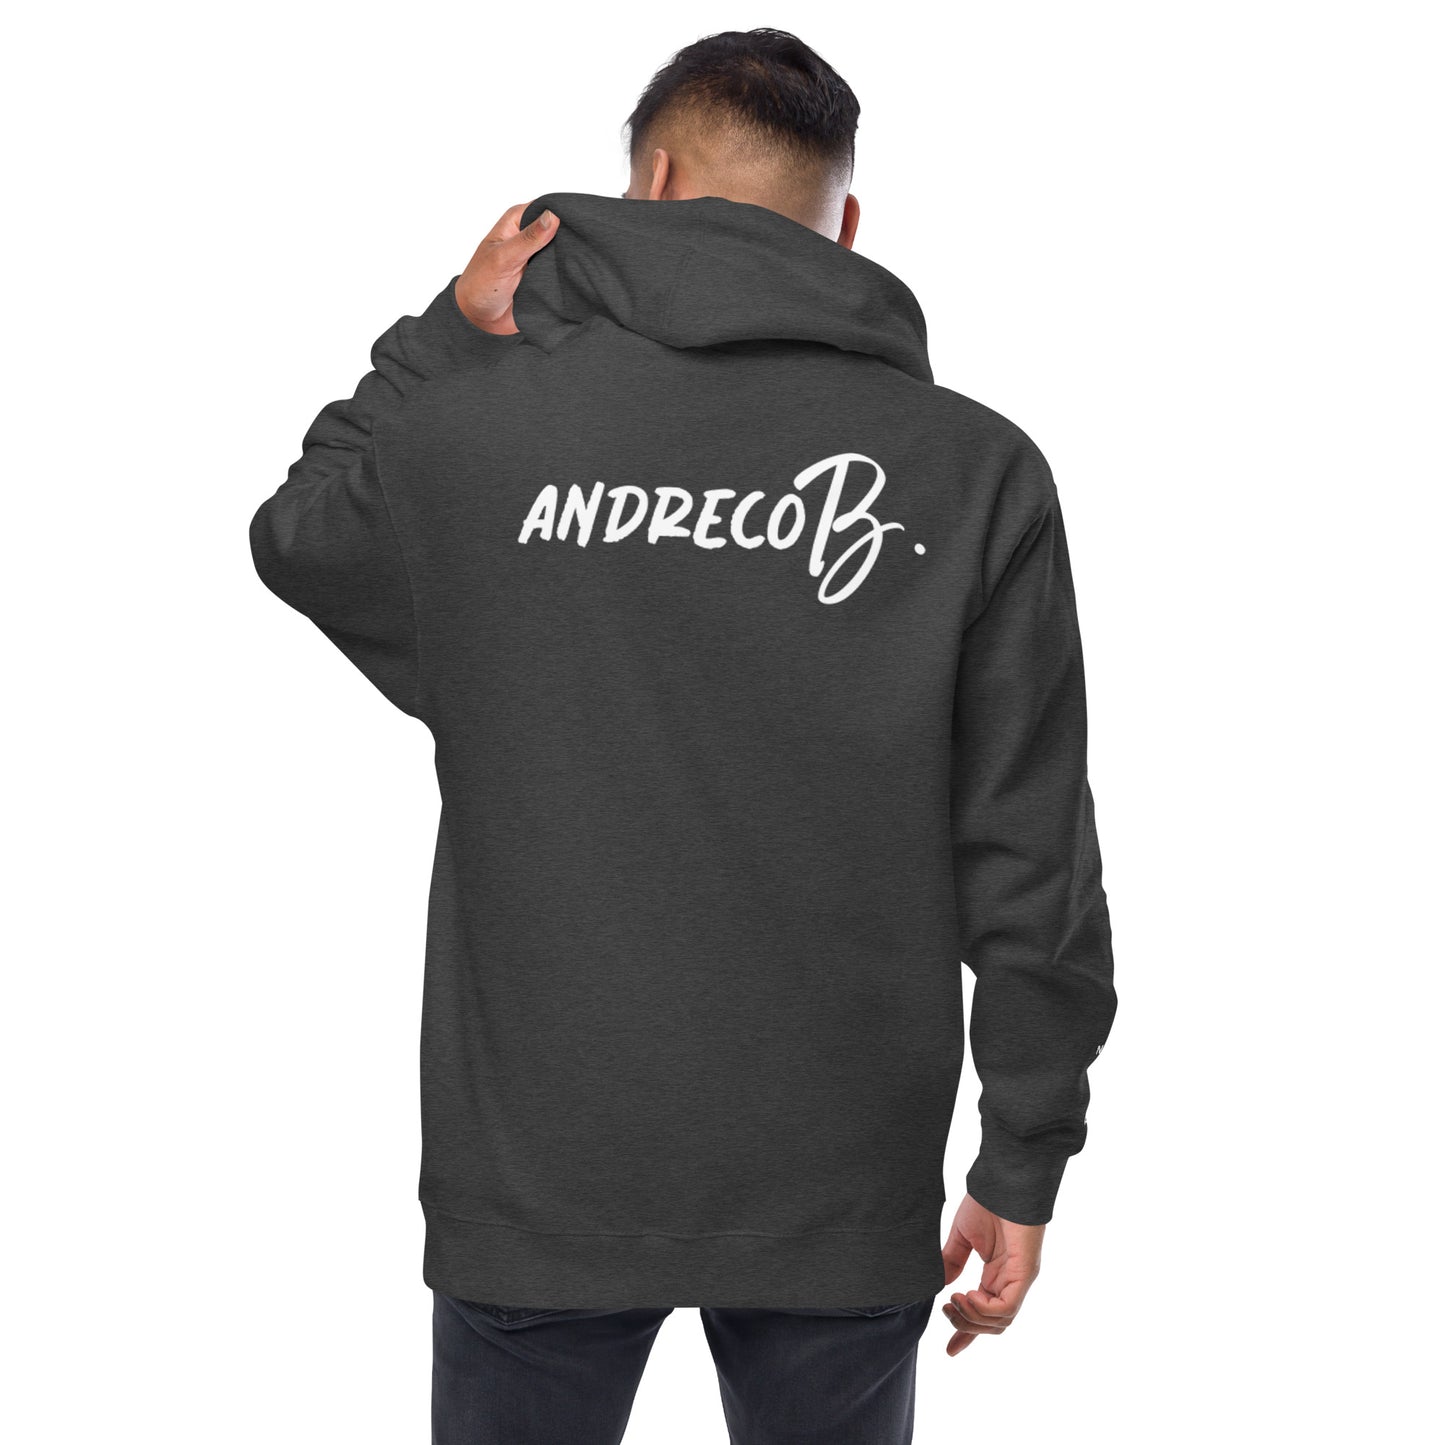 Andreco B. .2 fleece zip up hoodie